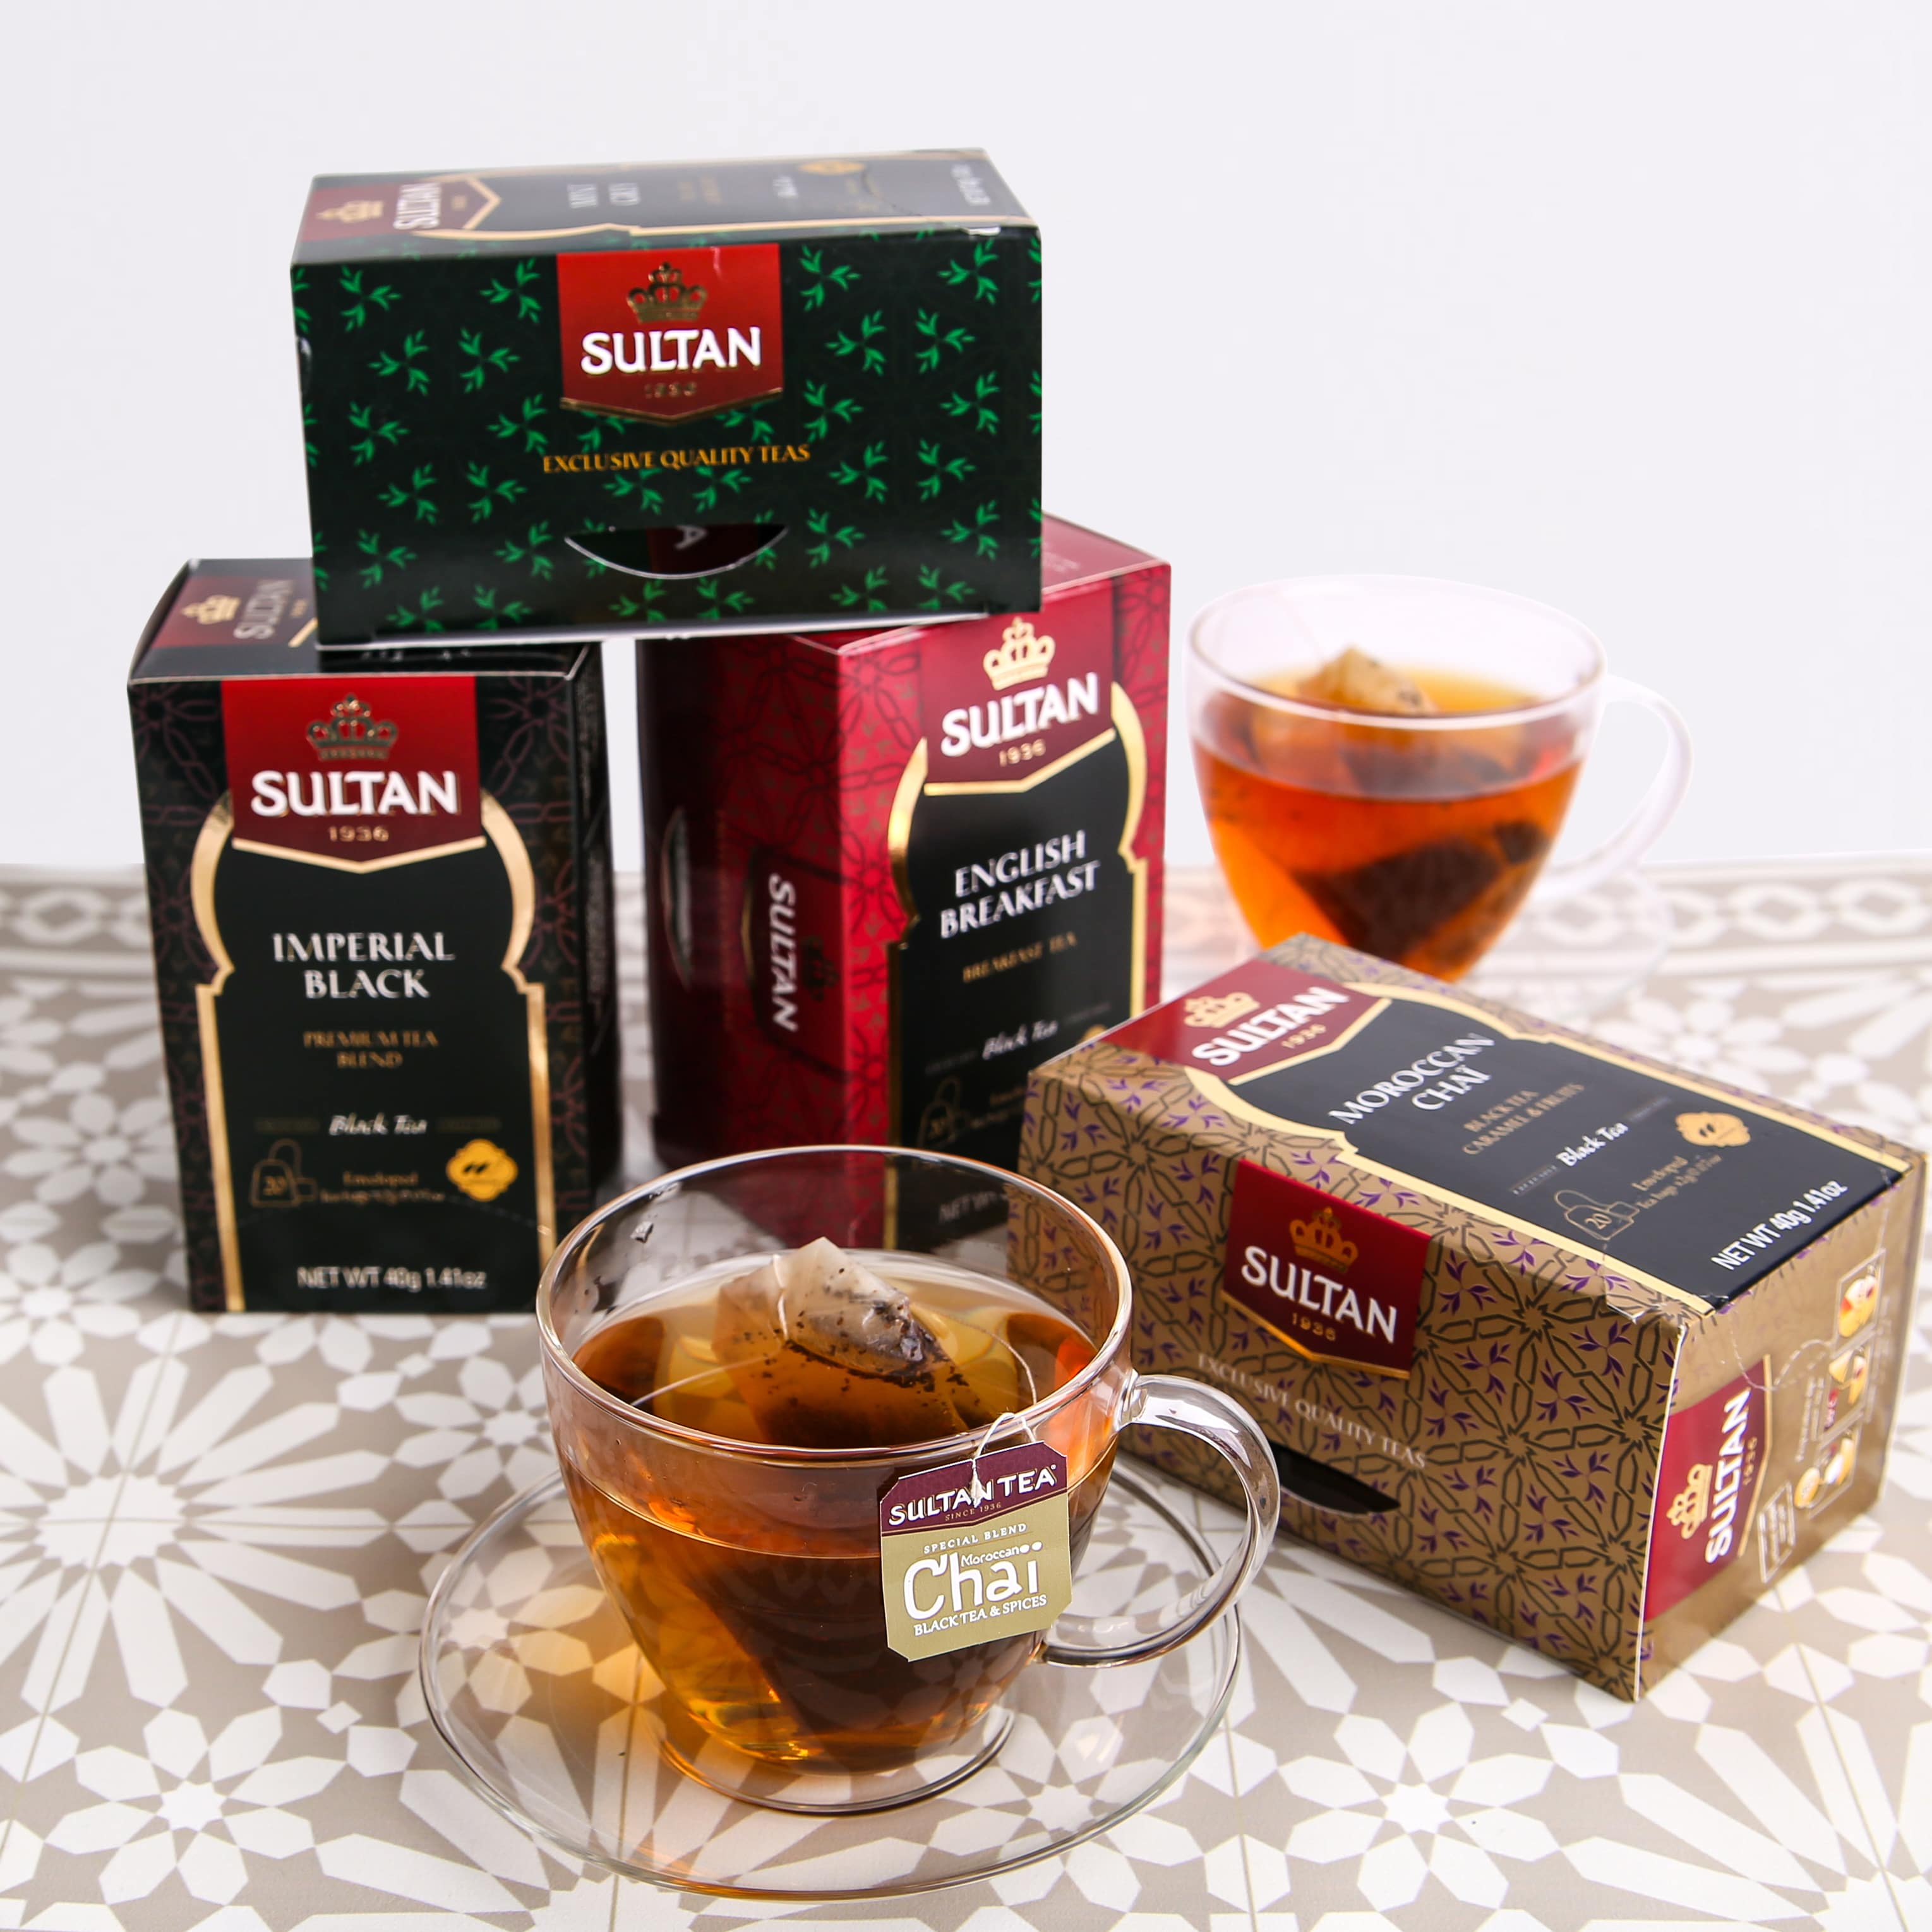 Marokkanischer Chaï-Tee - 20 Teebeutel